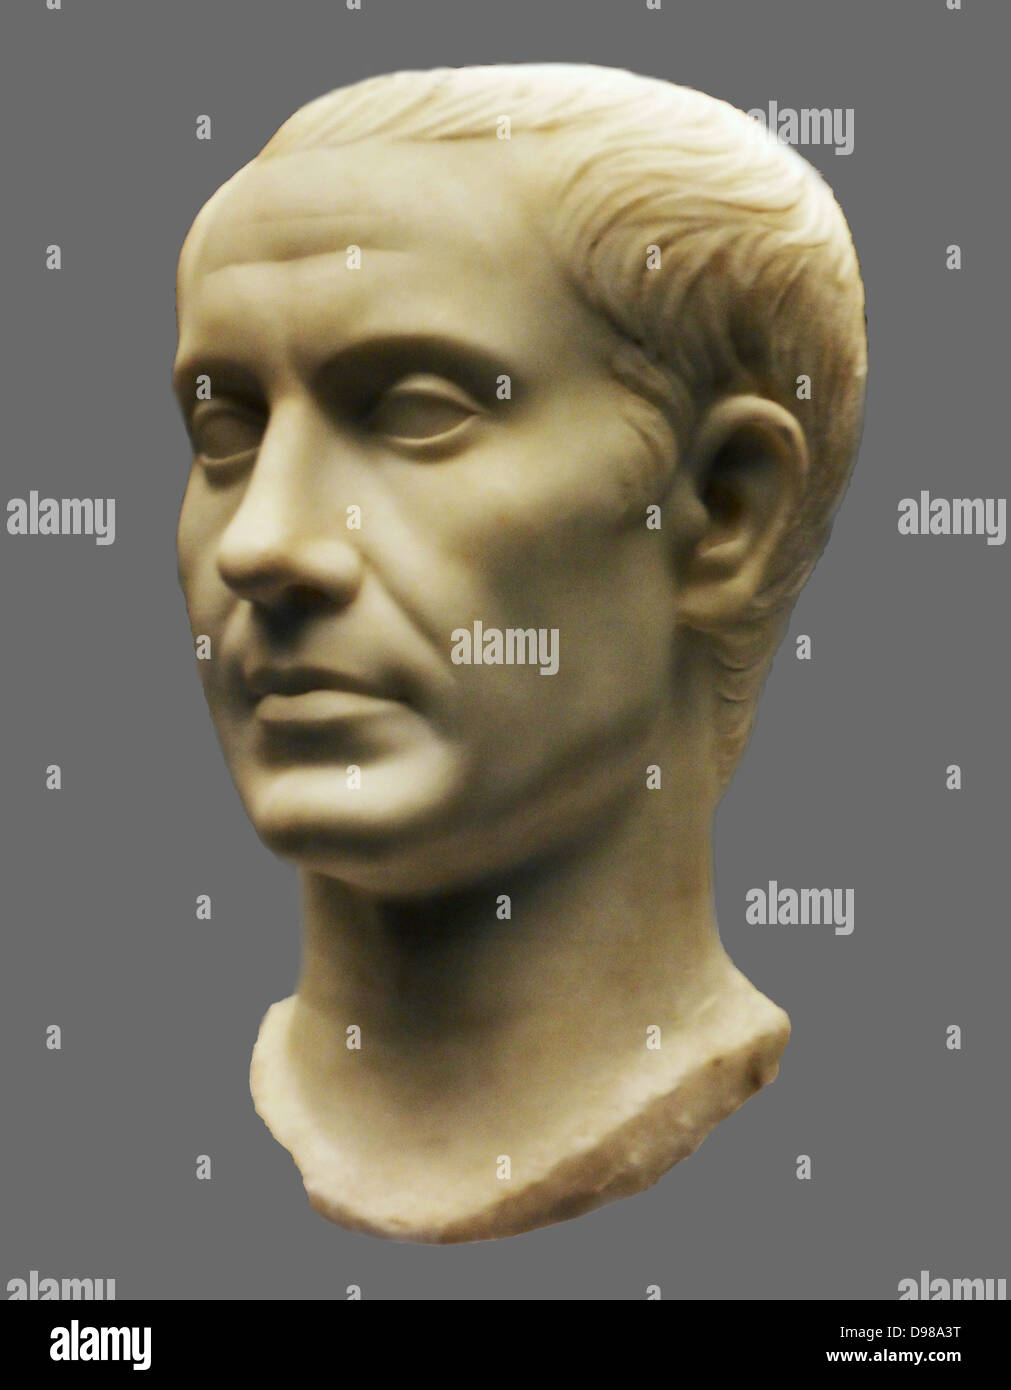 Retrato de Julio César (100-44BC). Roman, made in Italy AD40-50). Esta cabeza está hecha de fino mármol griego y fue una vez parte de una estatua, tal vez mostrando Caesar en una toga. Foto de stock